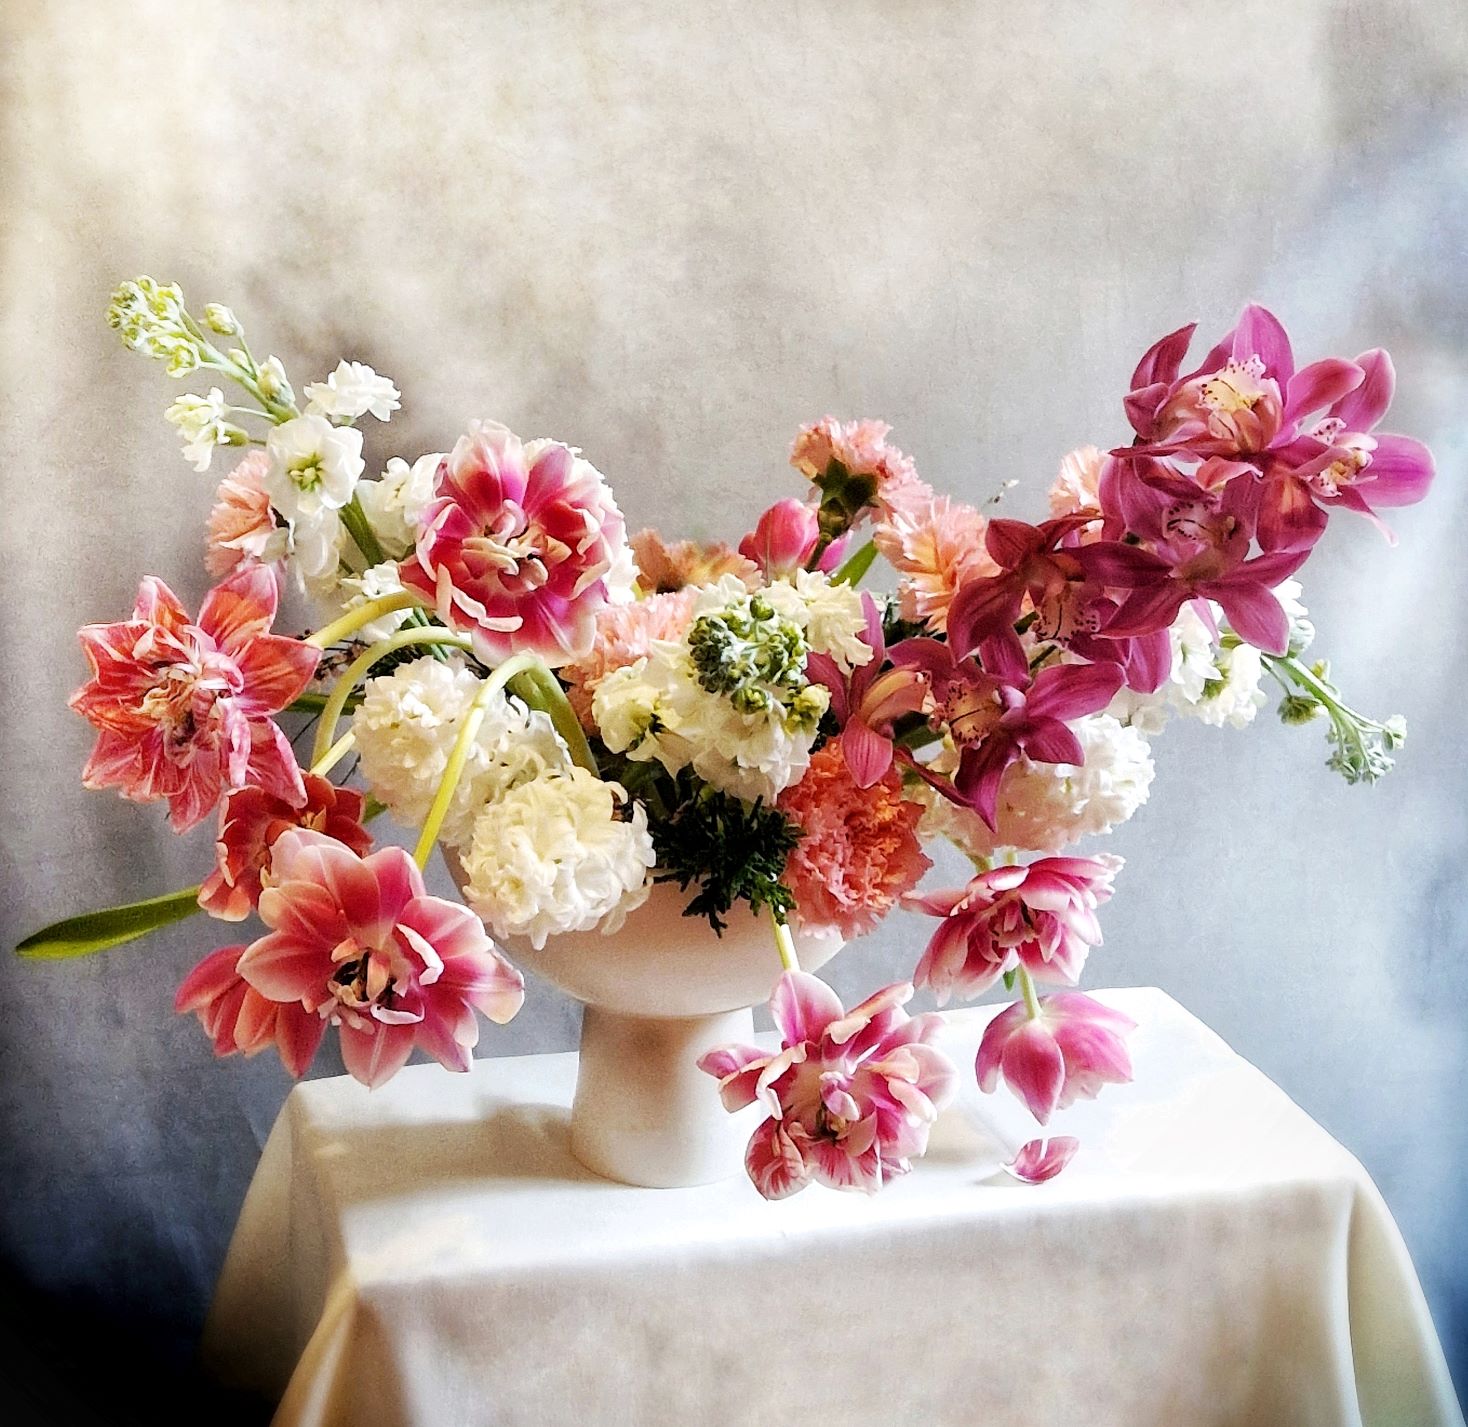 Fiori per San Valentino - Composizione Sweet Dreams by Fili d'Erba floral designer e fiorista freelance a Mirano (Venezia) - Blog Flos Floris